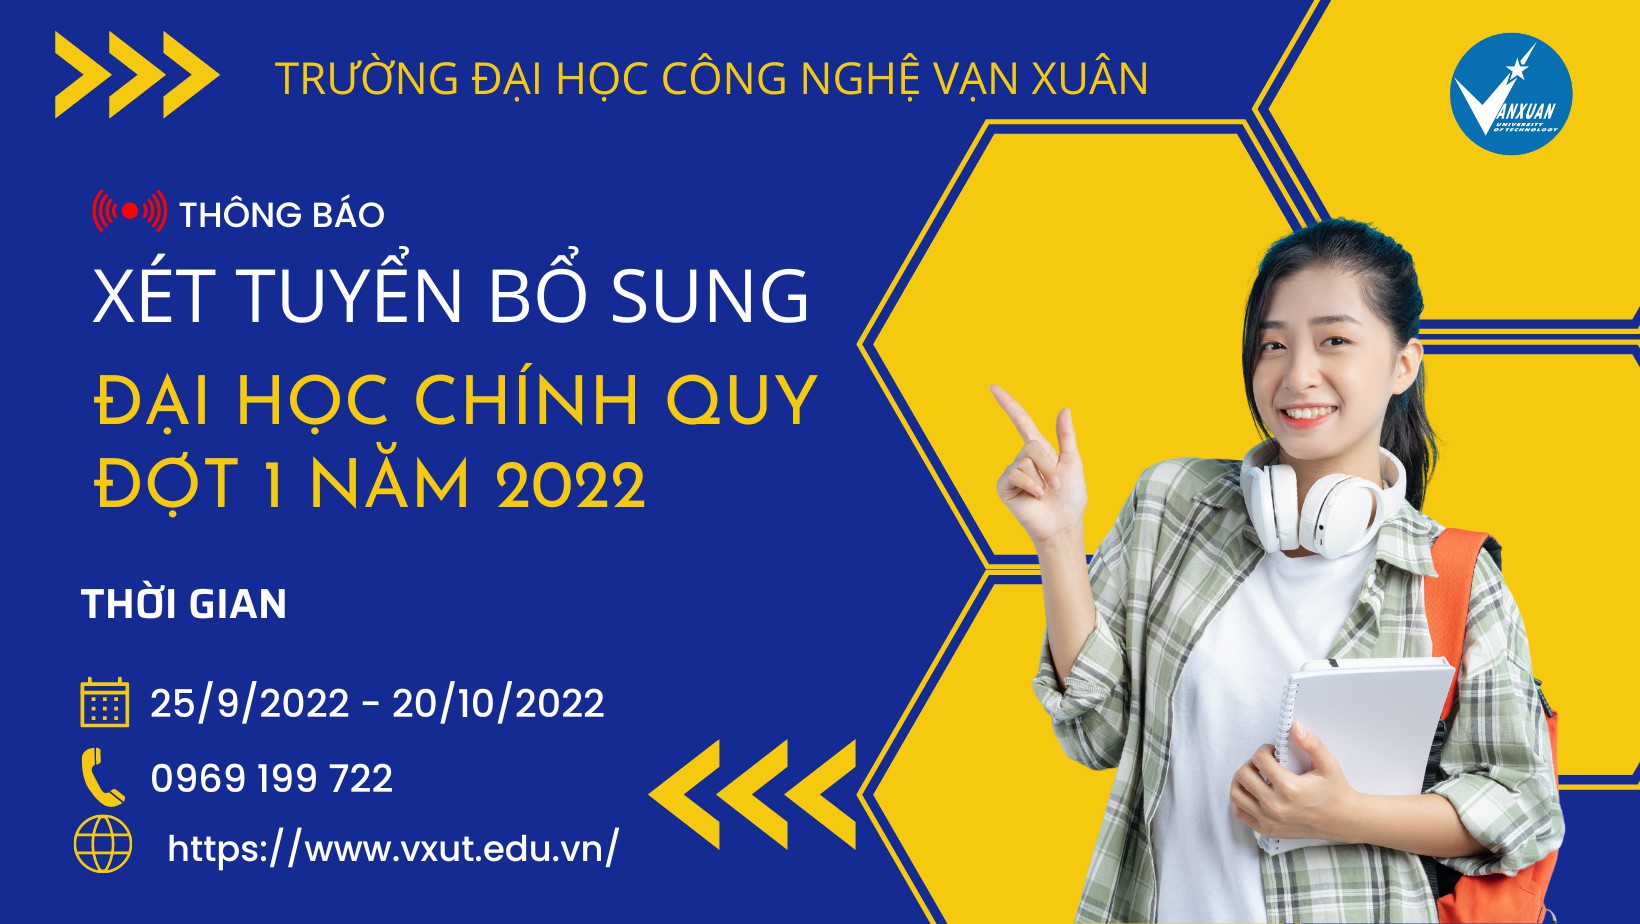 THÔNG BÁO: Xét tuyển bổ sung Đại học chính quy đợt 1 năm 2022